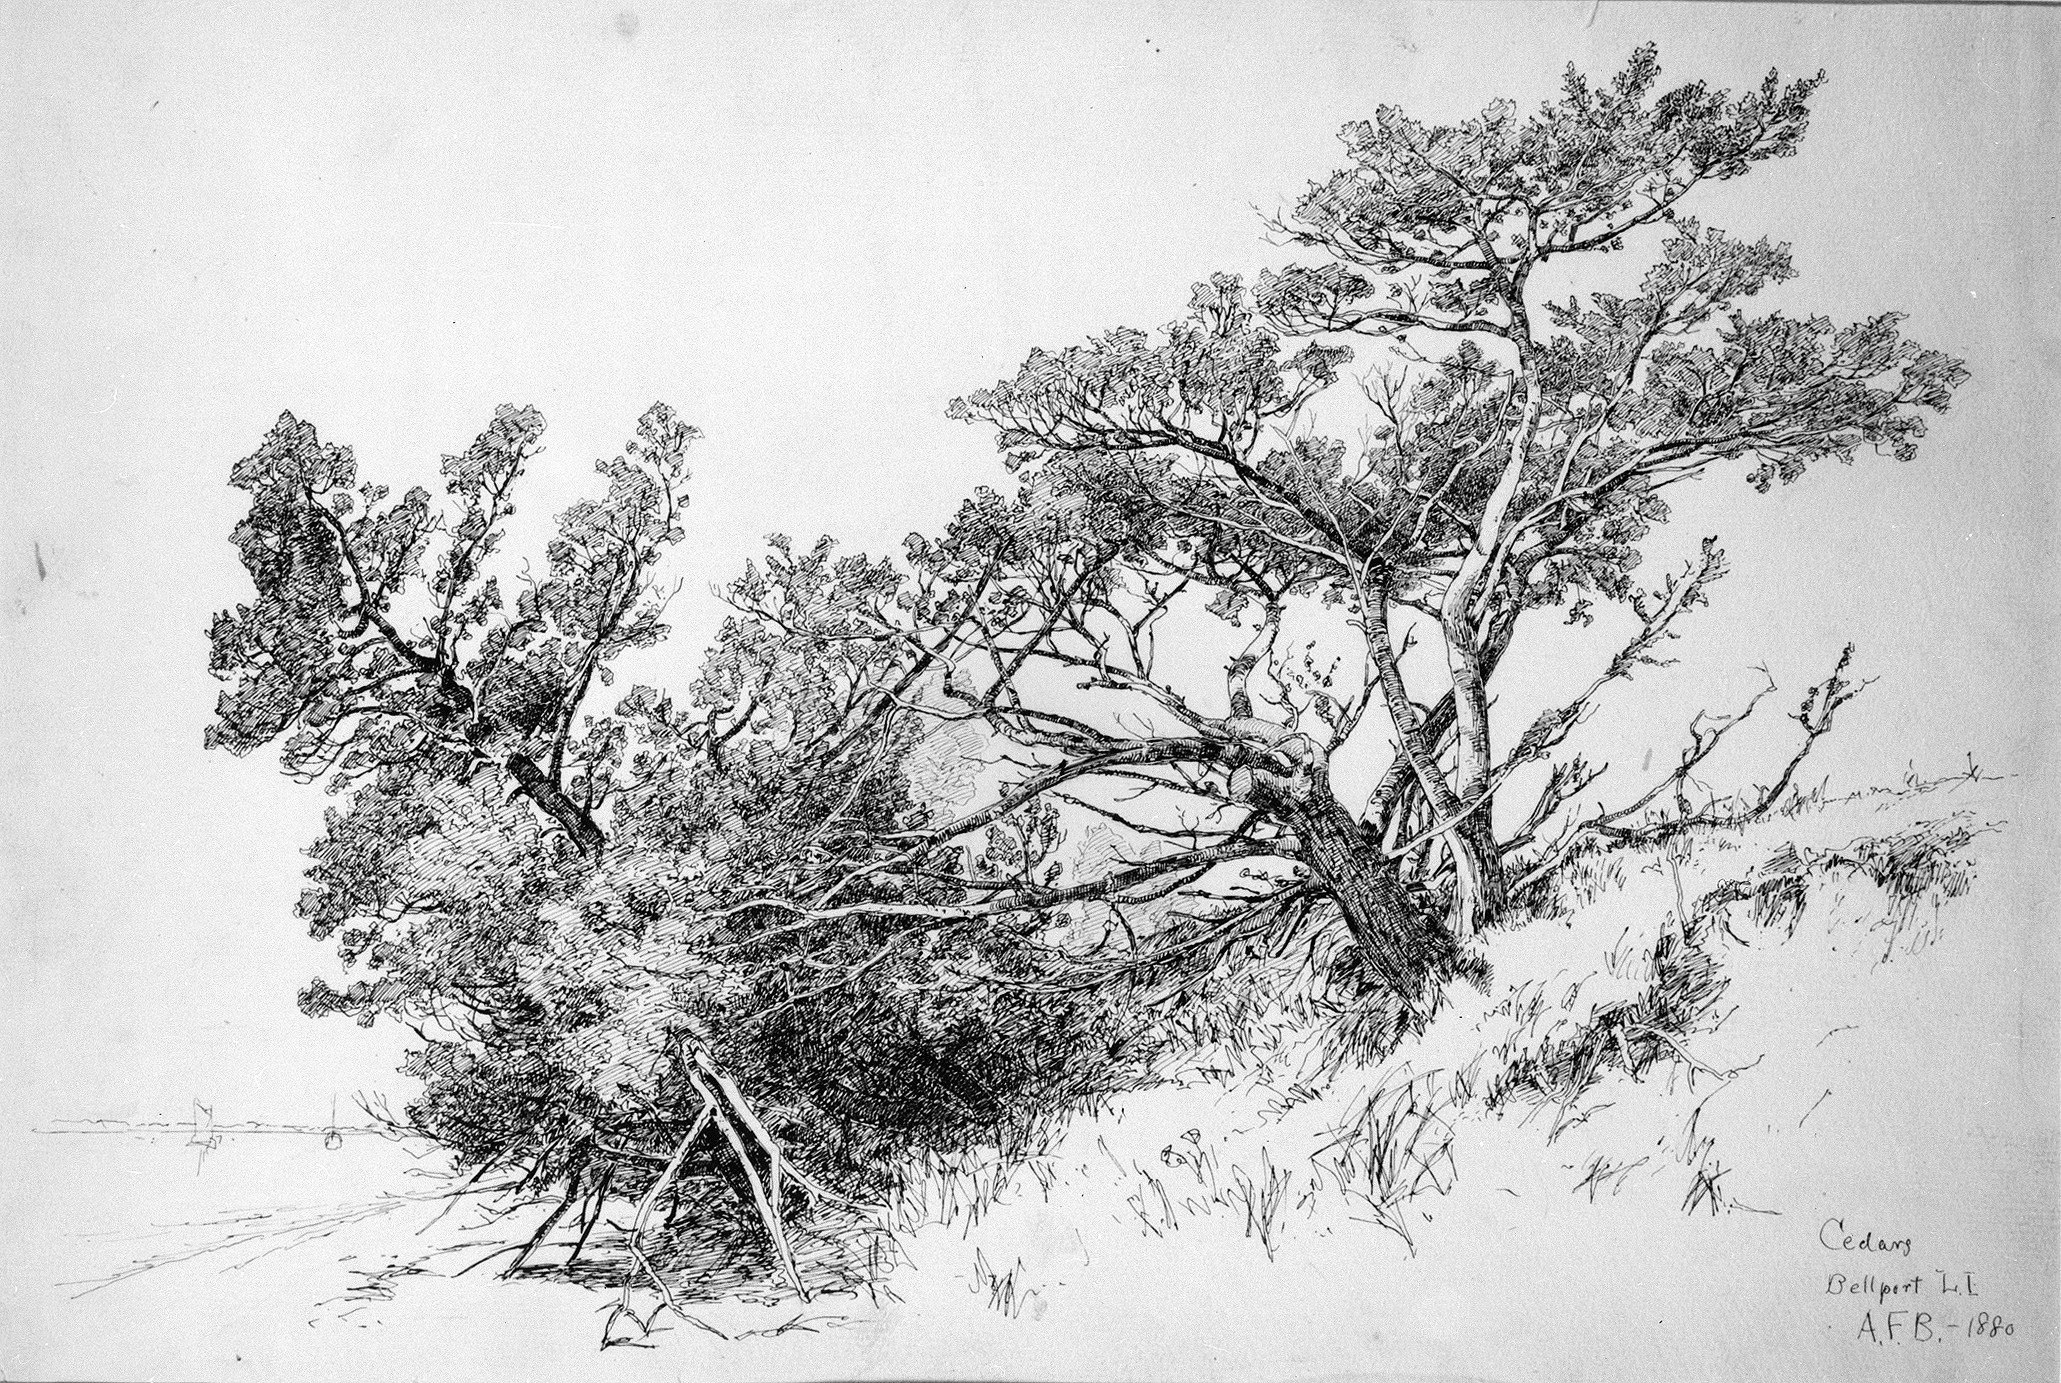 Cedars, Bellport, Long Island by Andrew Fisher Bunner - 1880 - 30.3 cm X 46.2 cm Metropolitan Museum of Art